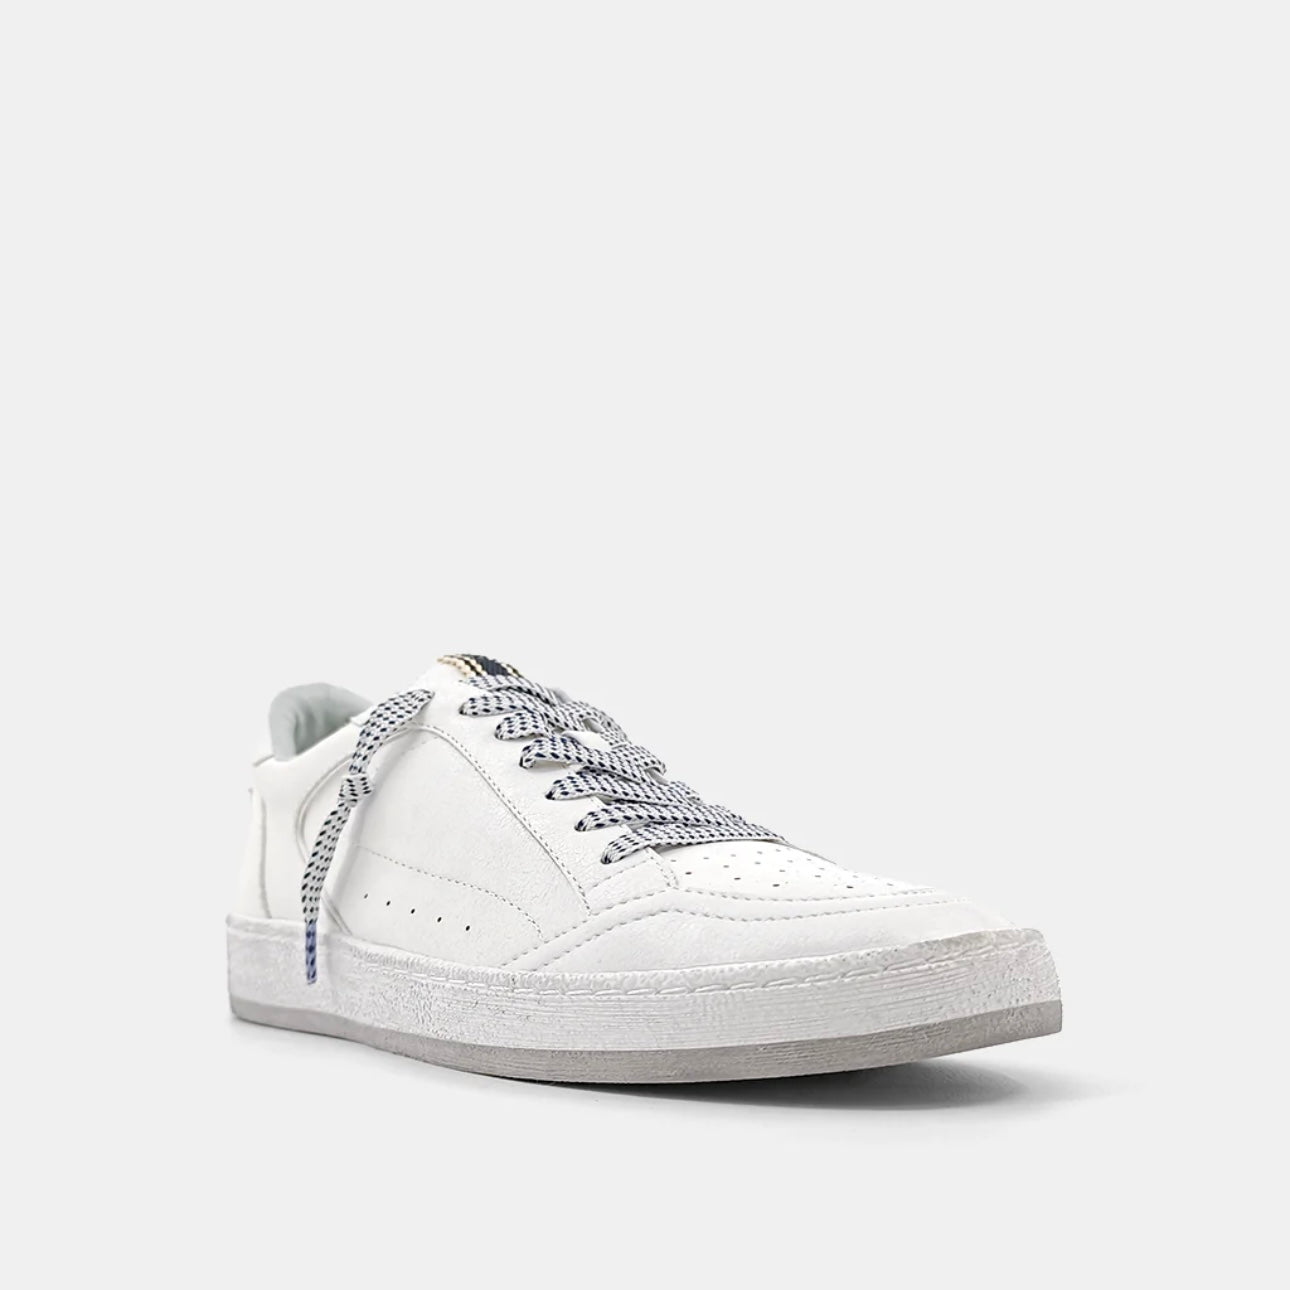 Park Sneaker in White by Shu Shop